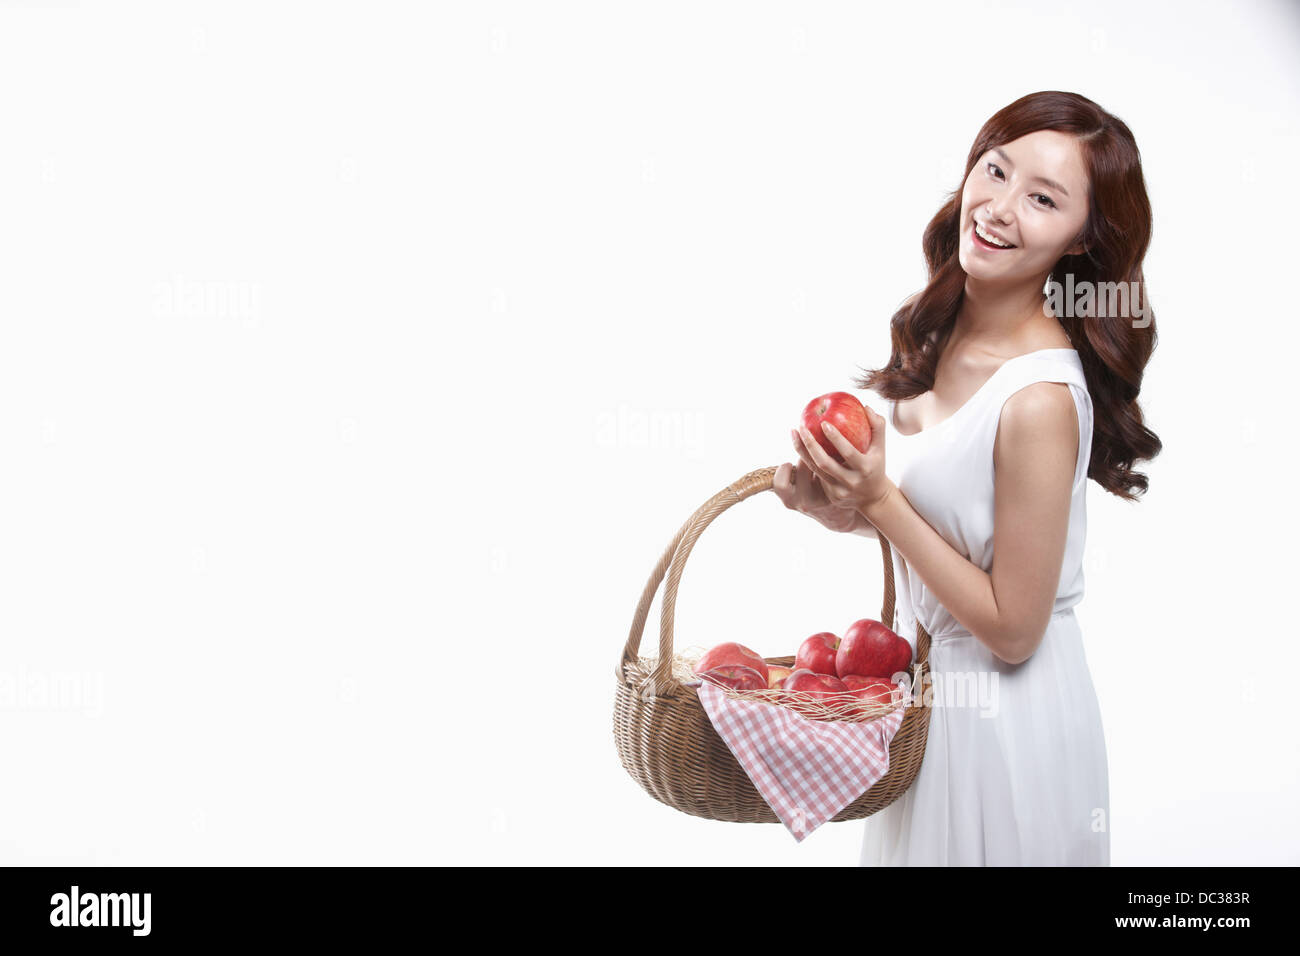 eine Dame im weißen Kleid hält einen Korb mit Äpfeln Stockfoto